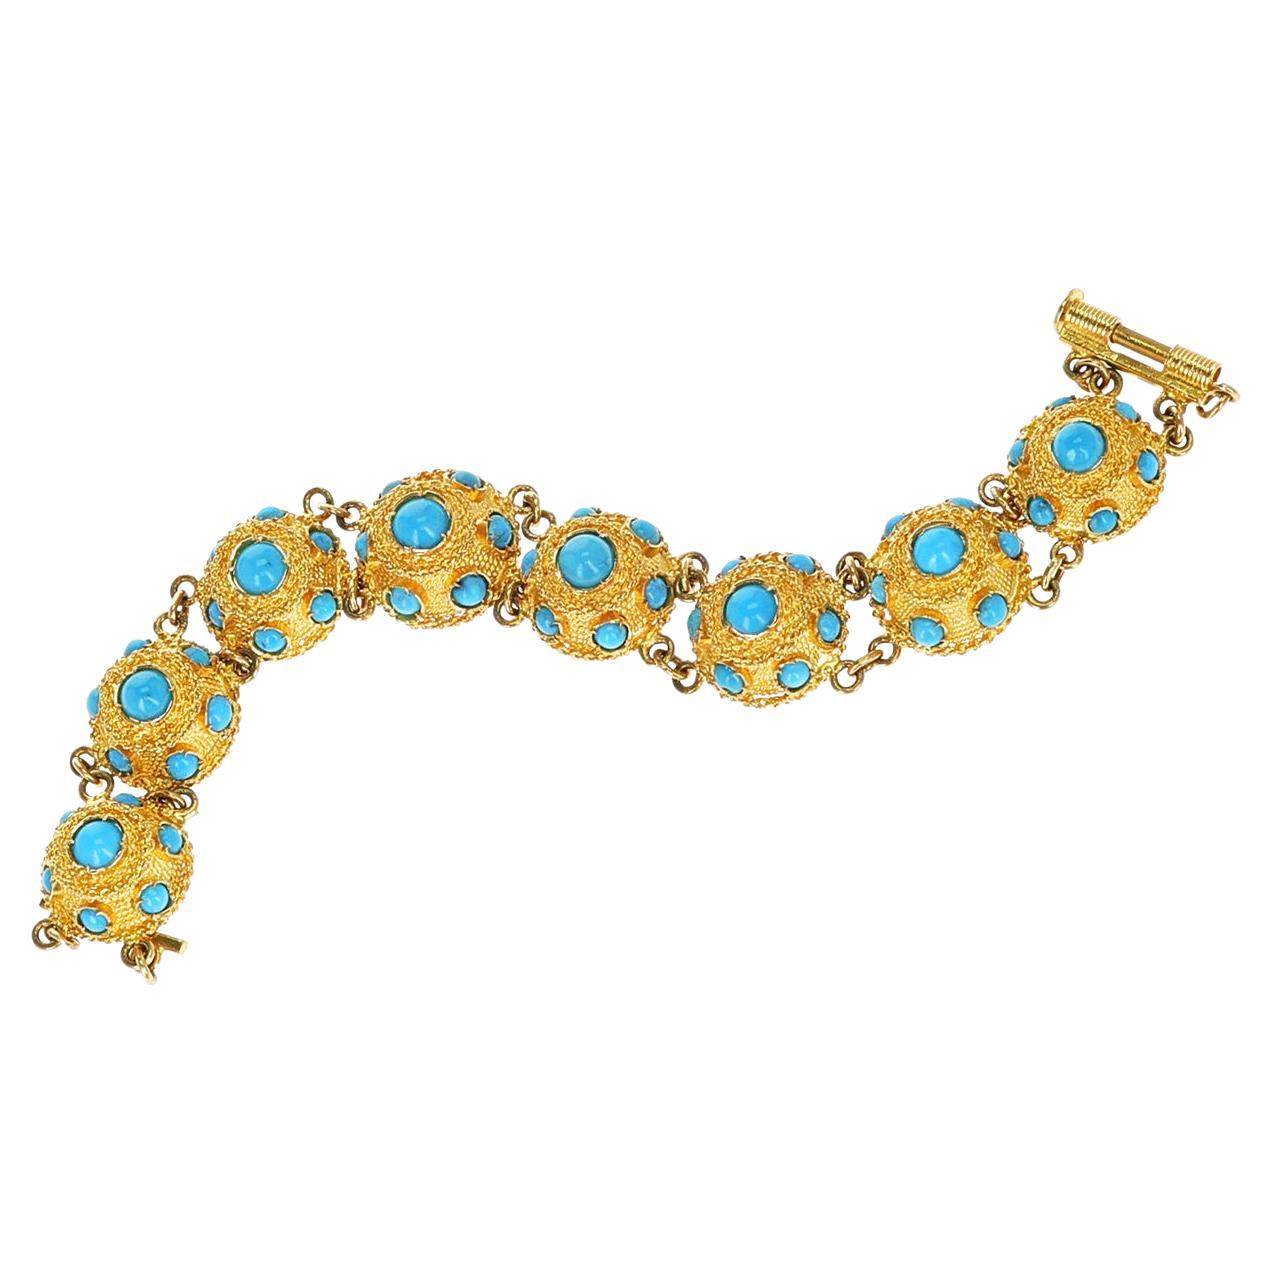 Bracelet en or et cabochon de turquoise, faisant partie de l'ensemble